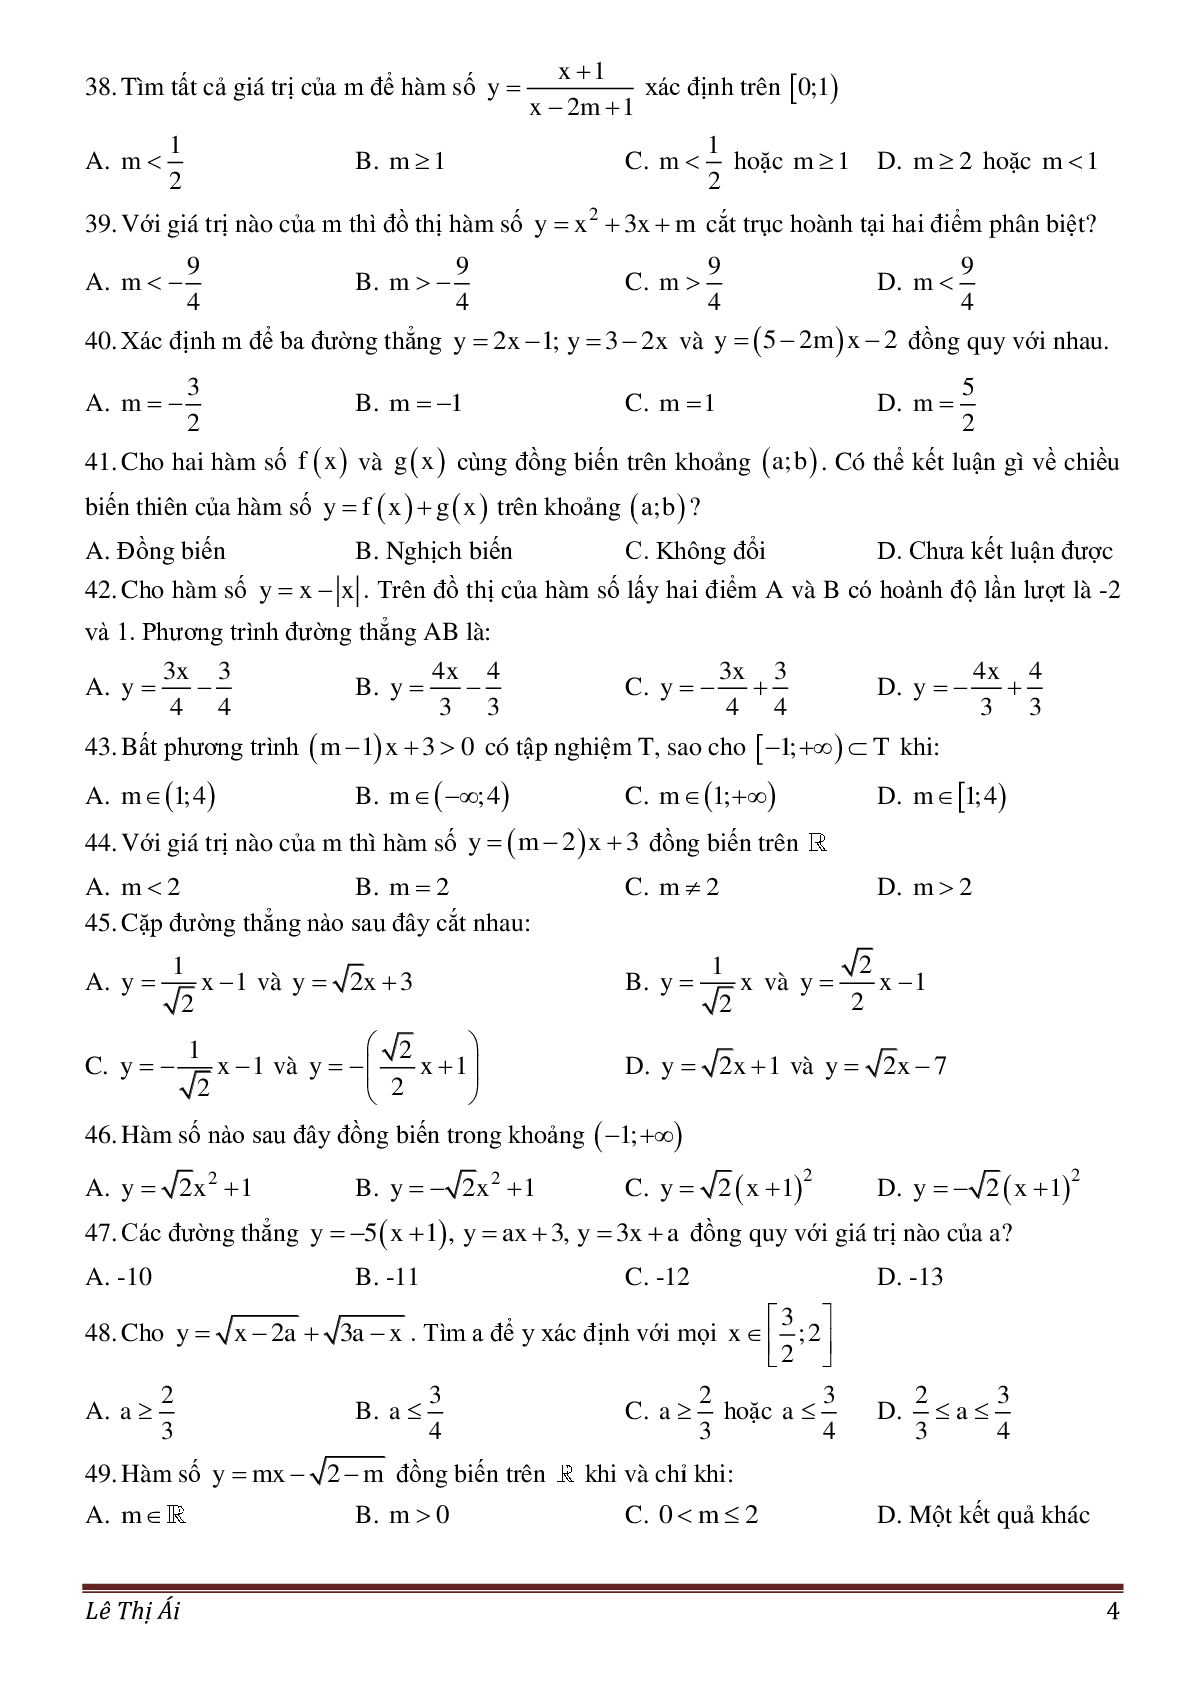 50 câu trắc nghiệm về đồ thị hàm số (trang 4)